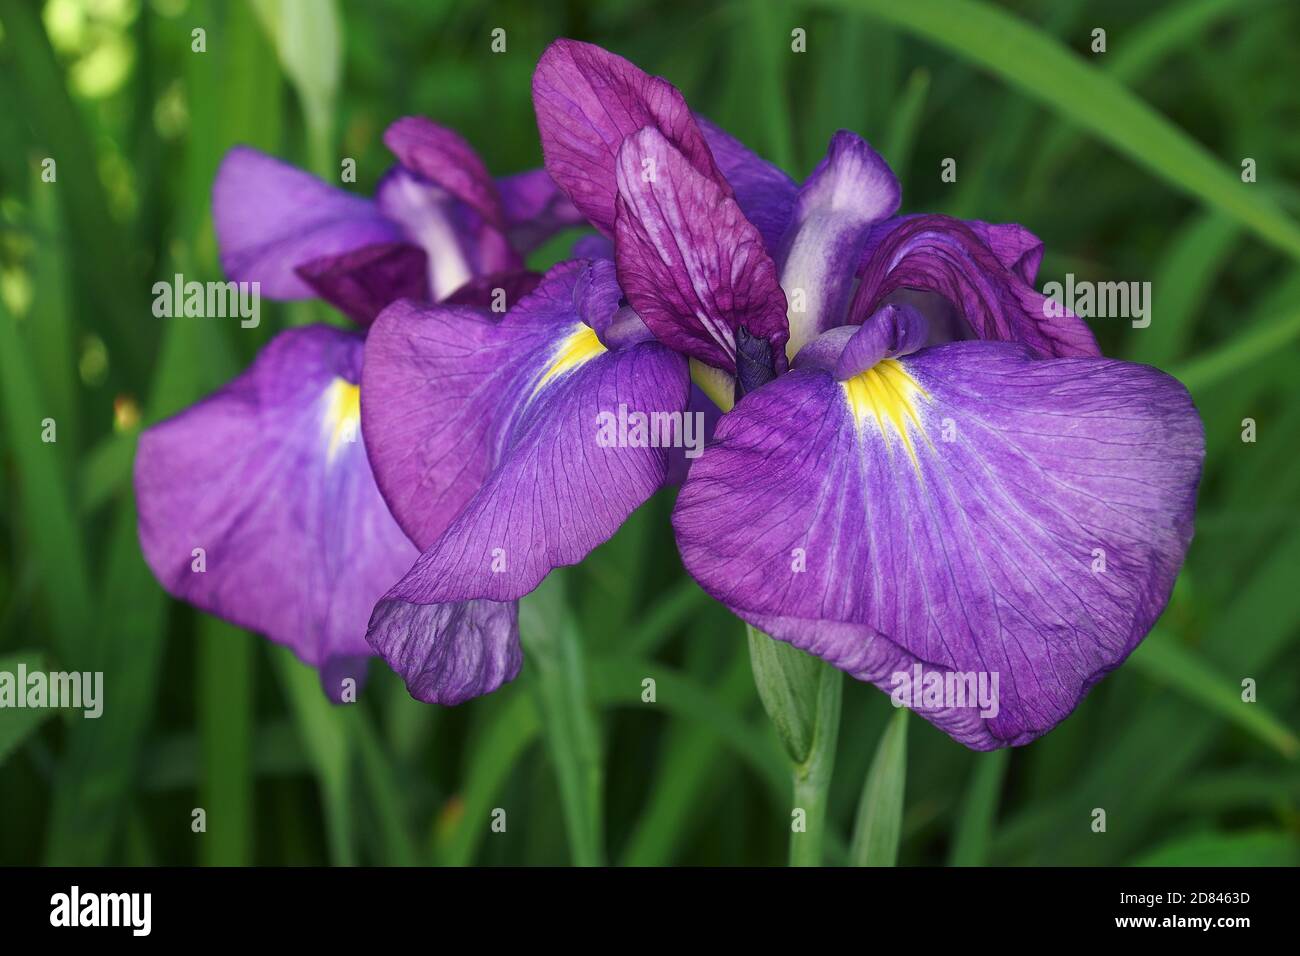 Japanese iris (Iris ensata). Another scientific name Iris kaempferi Stock Photo